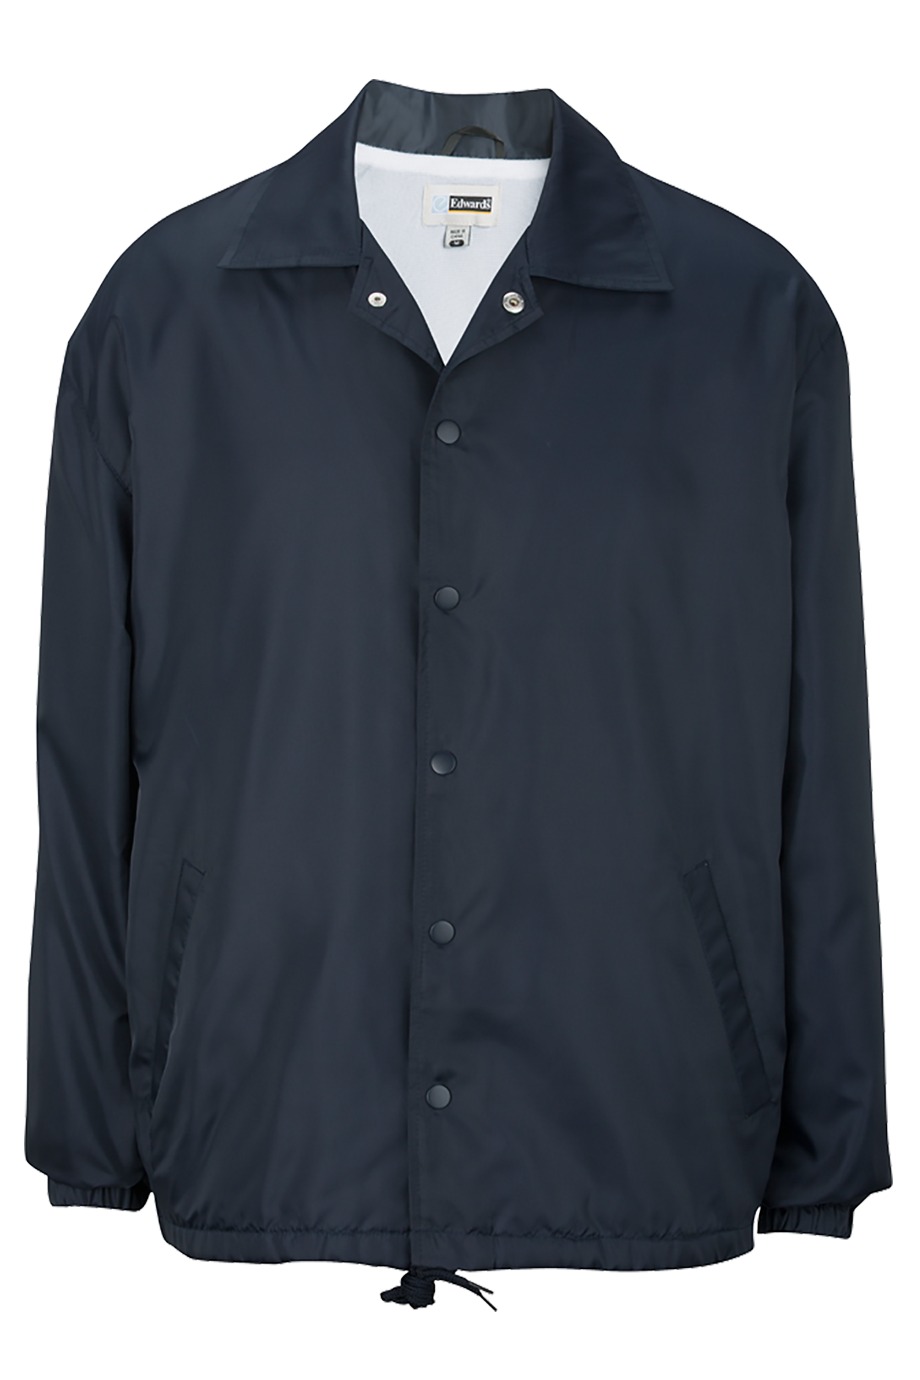 Edwards Garment 3430 - Unisex Coach's Jacket